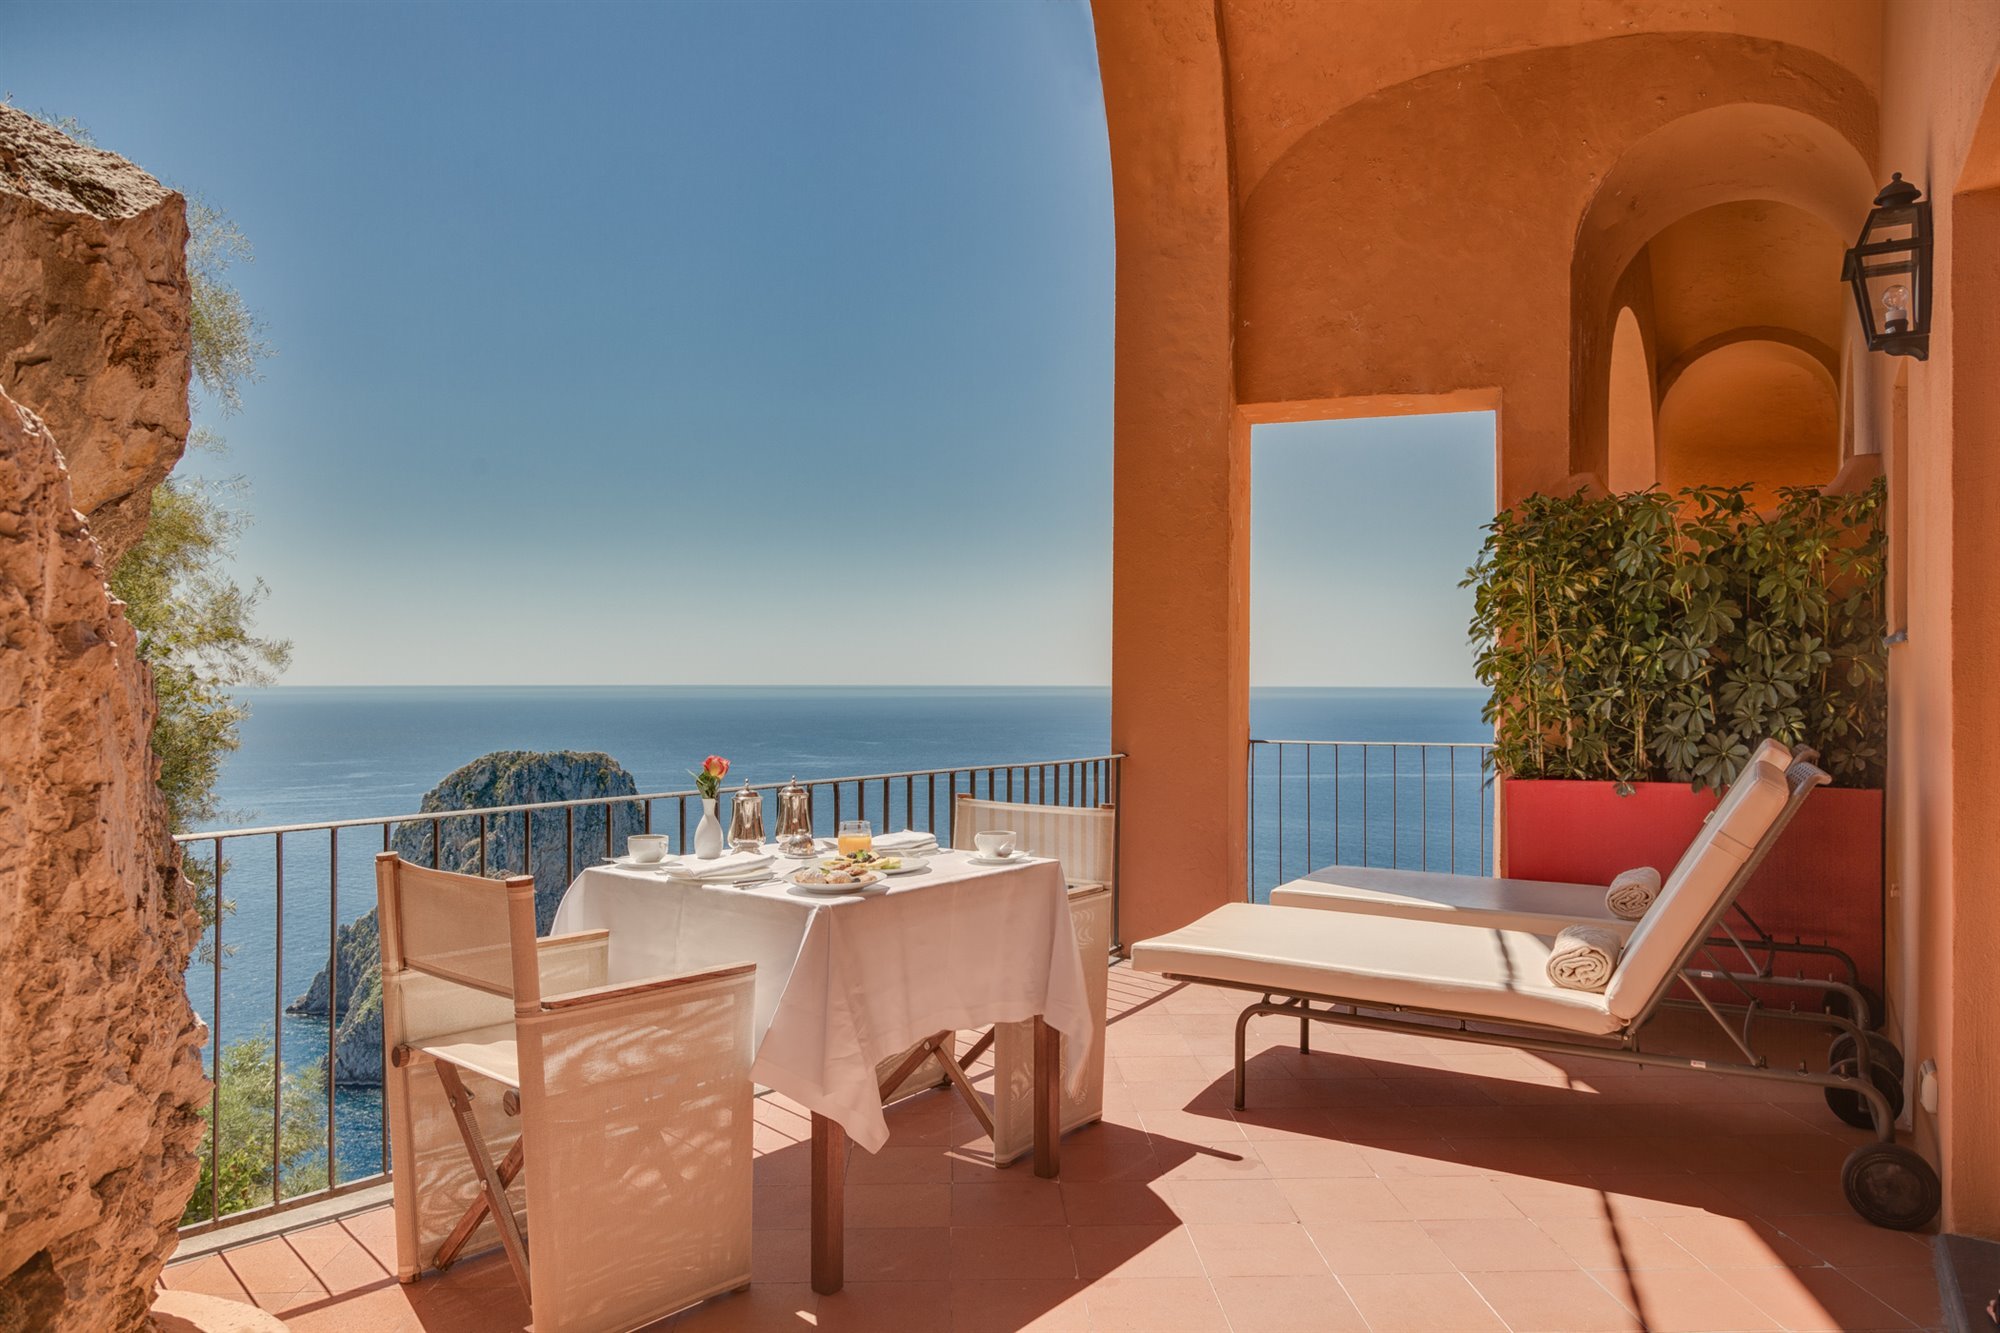 Hotel punta Tragara en Capri de lE Corbusier terraza